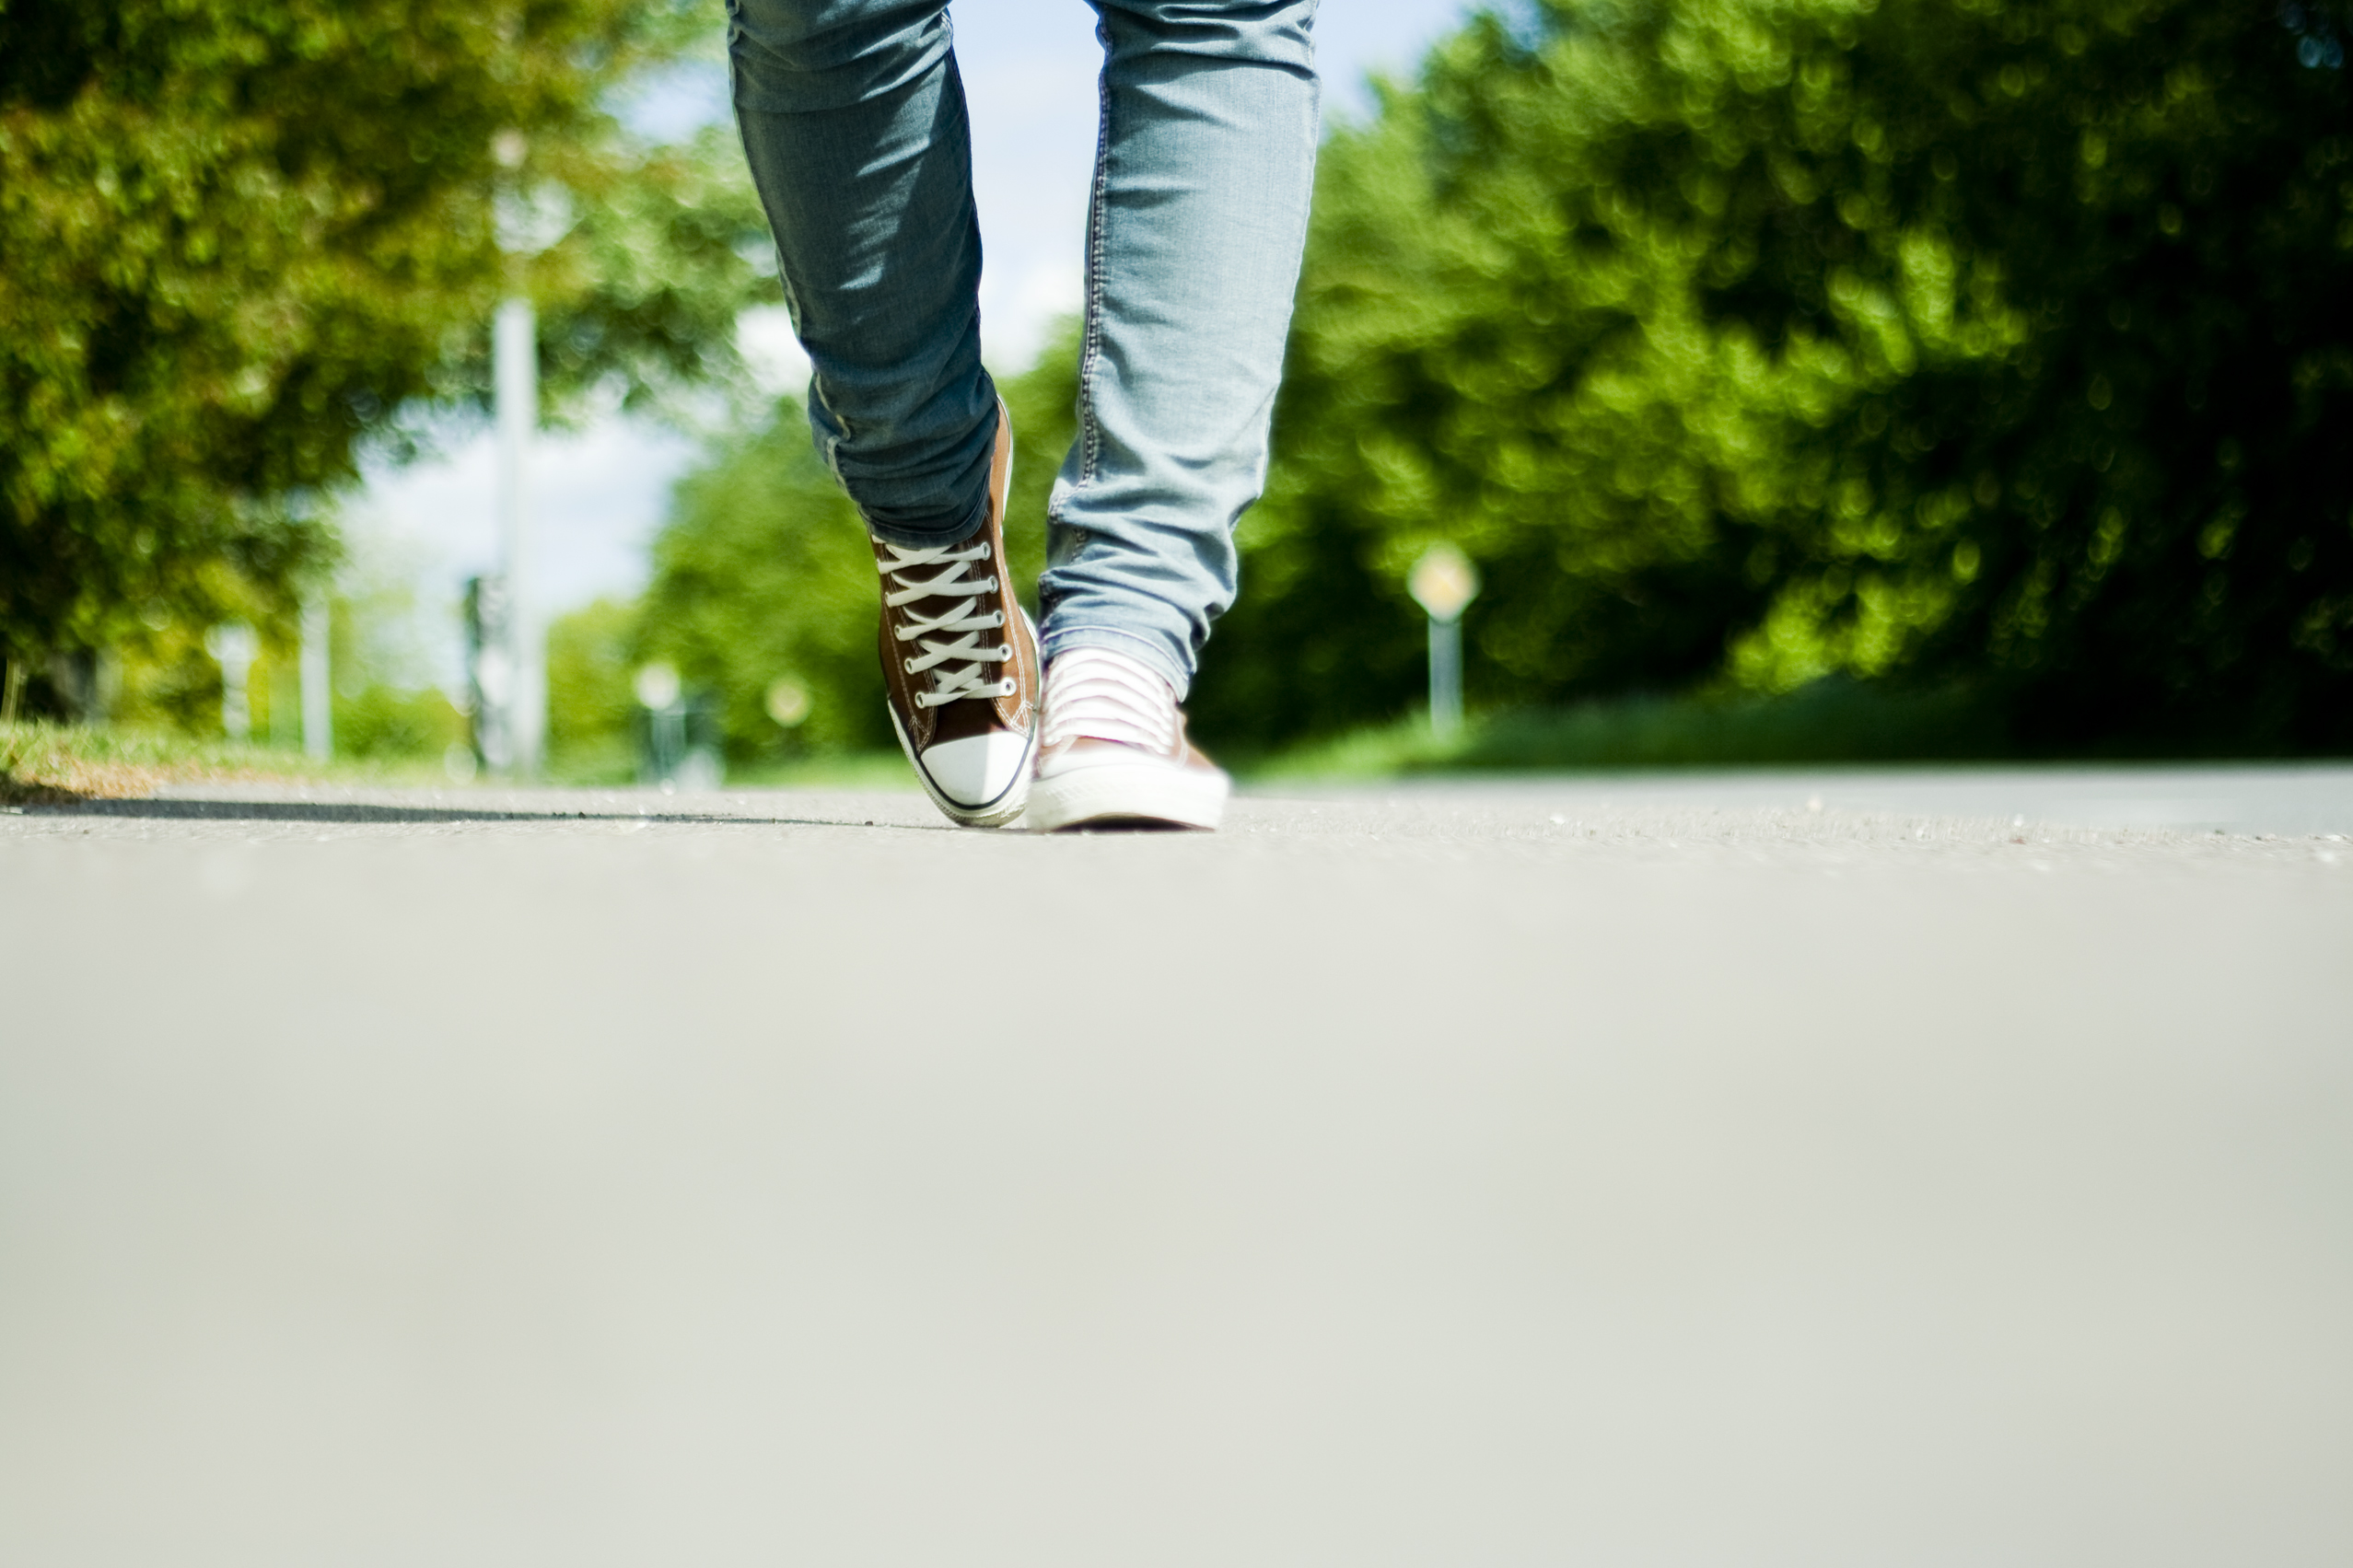 Το περπάτημα μειώνει τον κίνδυνο καρδιακής νόσου